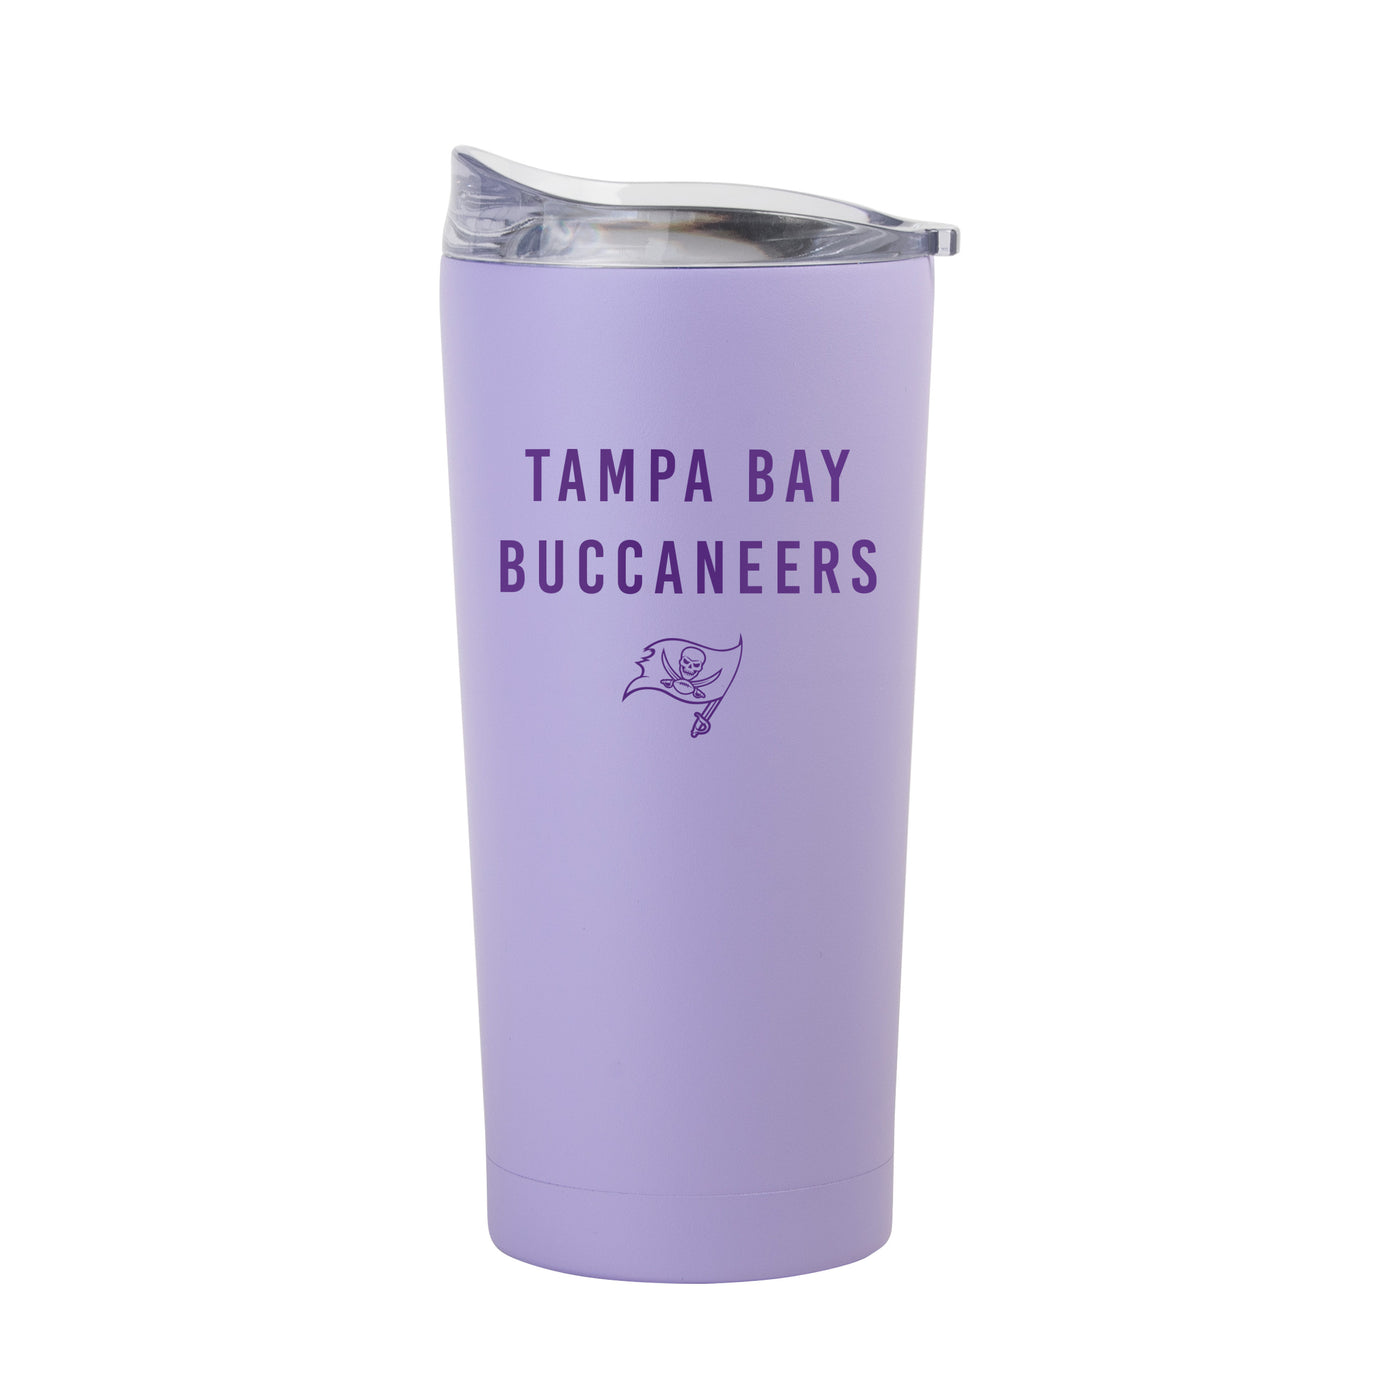 Tampa Bay Buccaneers 20oz Tonal Lavender Powder Coat Tumbler